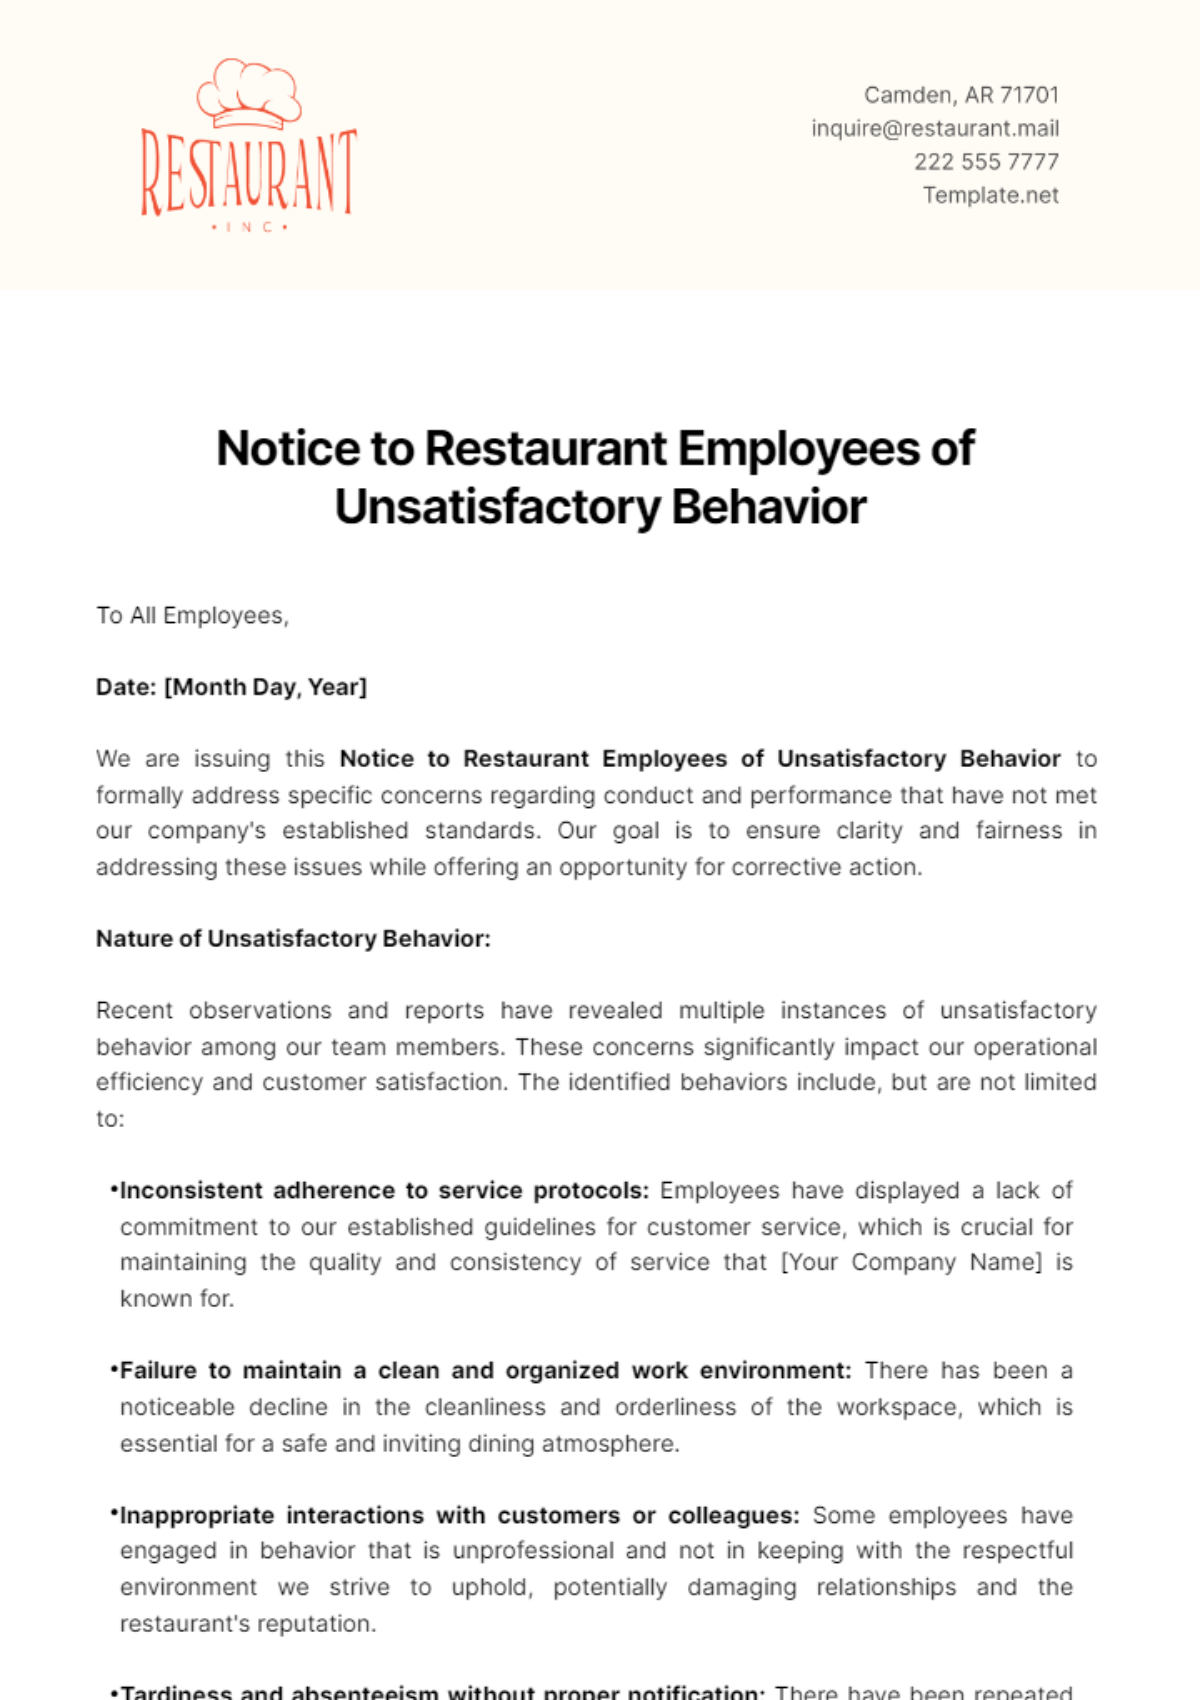 Notice to Restaurant Employees of Unsatisfactory Behavior Template